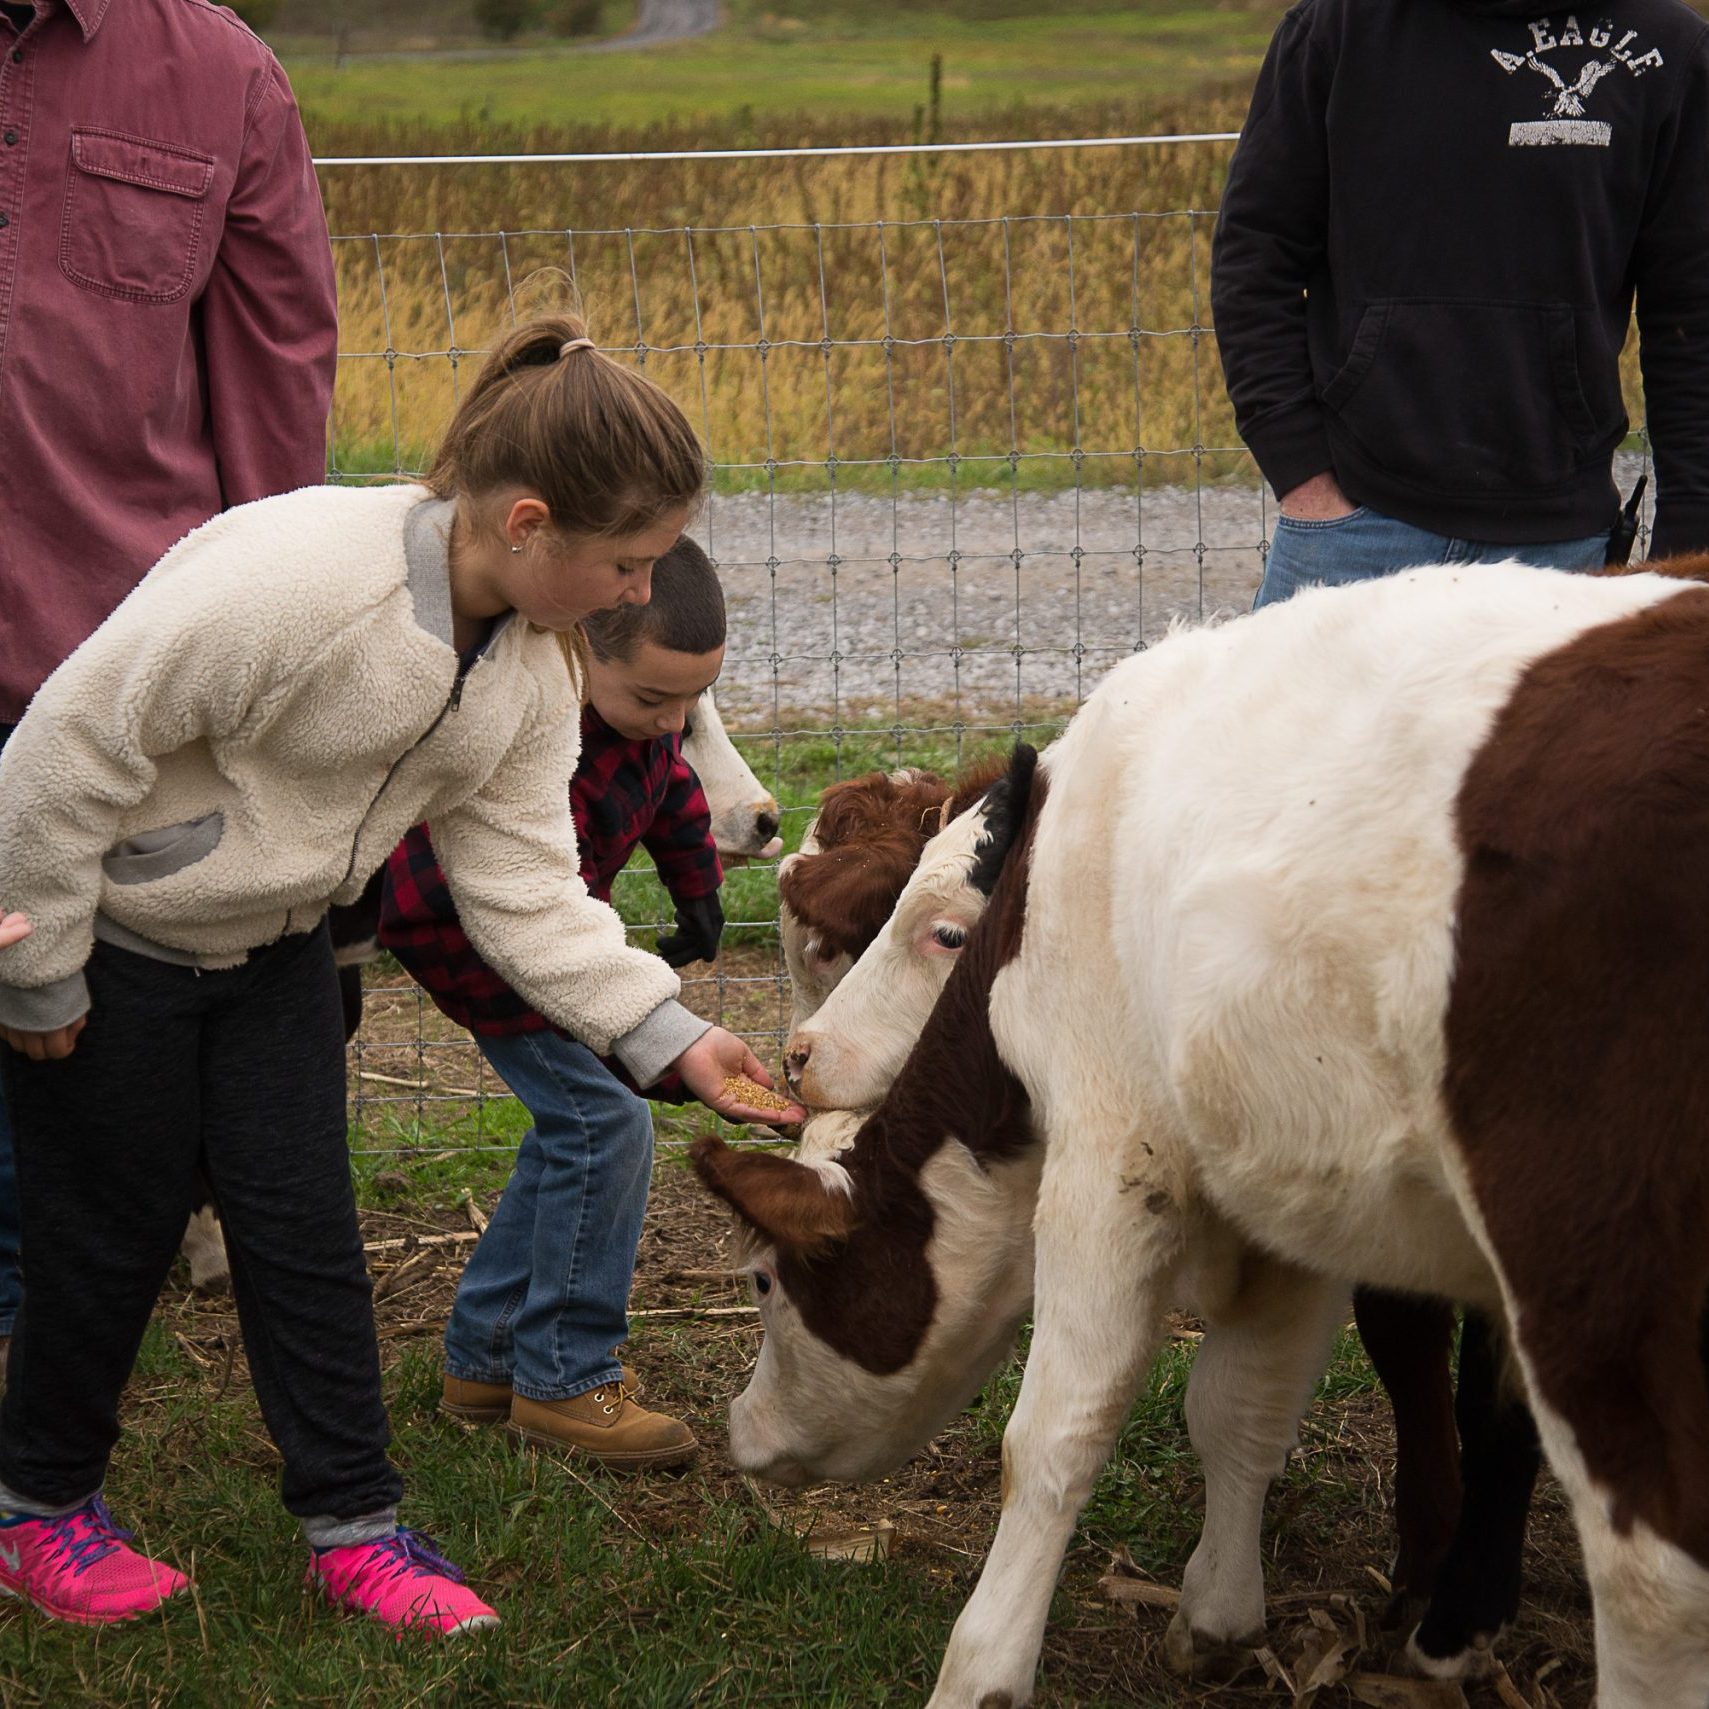 Kids feeding calves at Cluckin' "A" Critter Farm